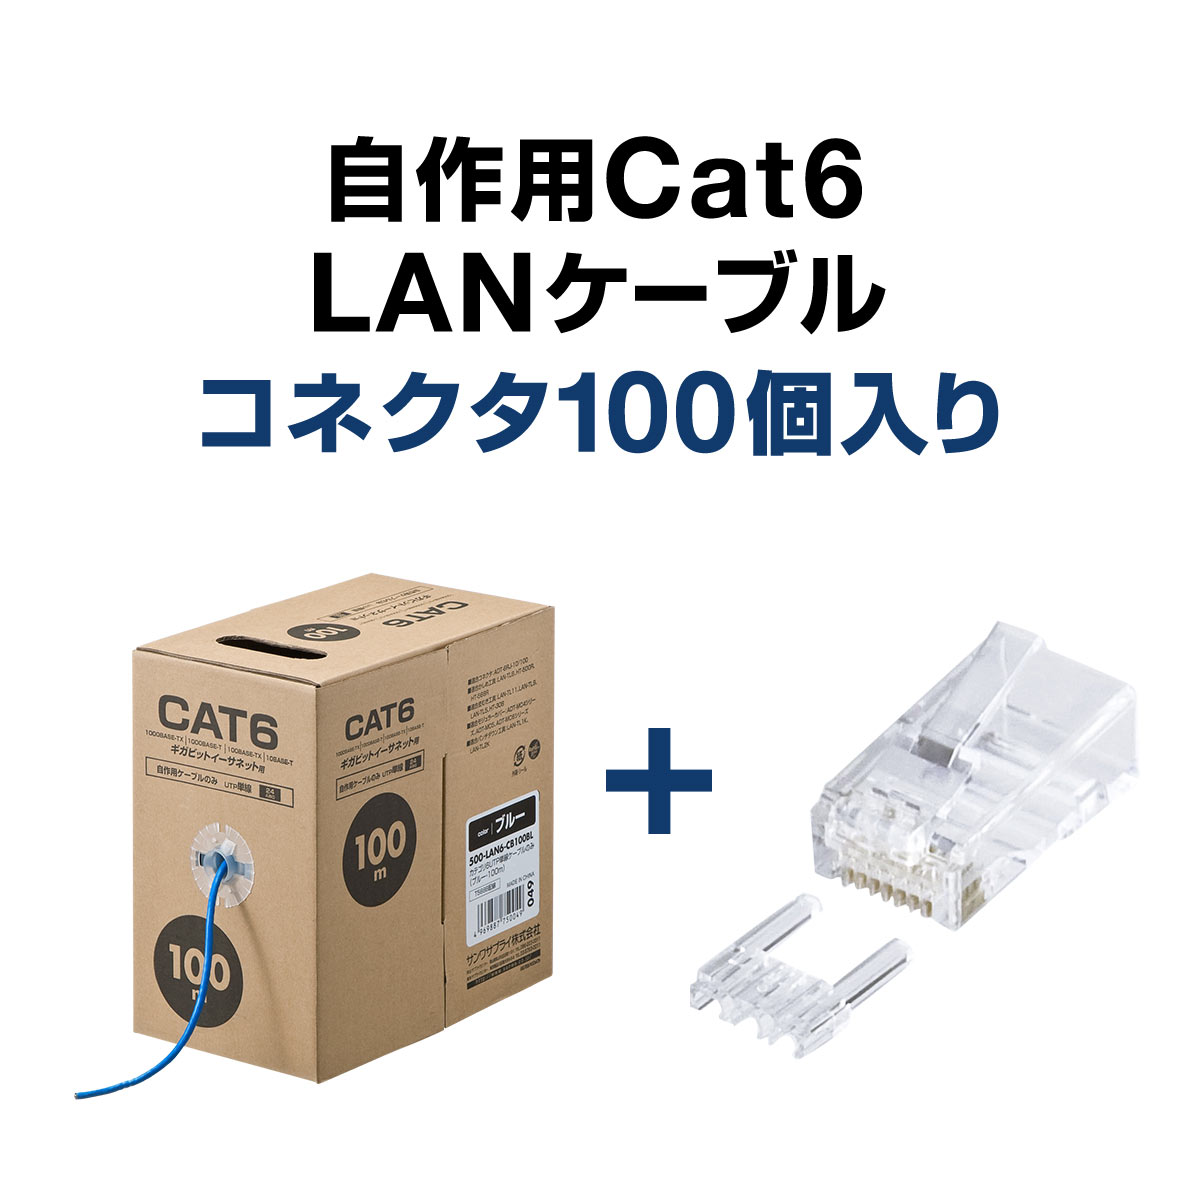 LANケーブル コネクタセット品 自作用 100m カテゴリー6 単線 UTP